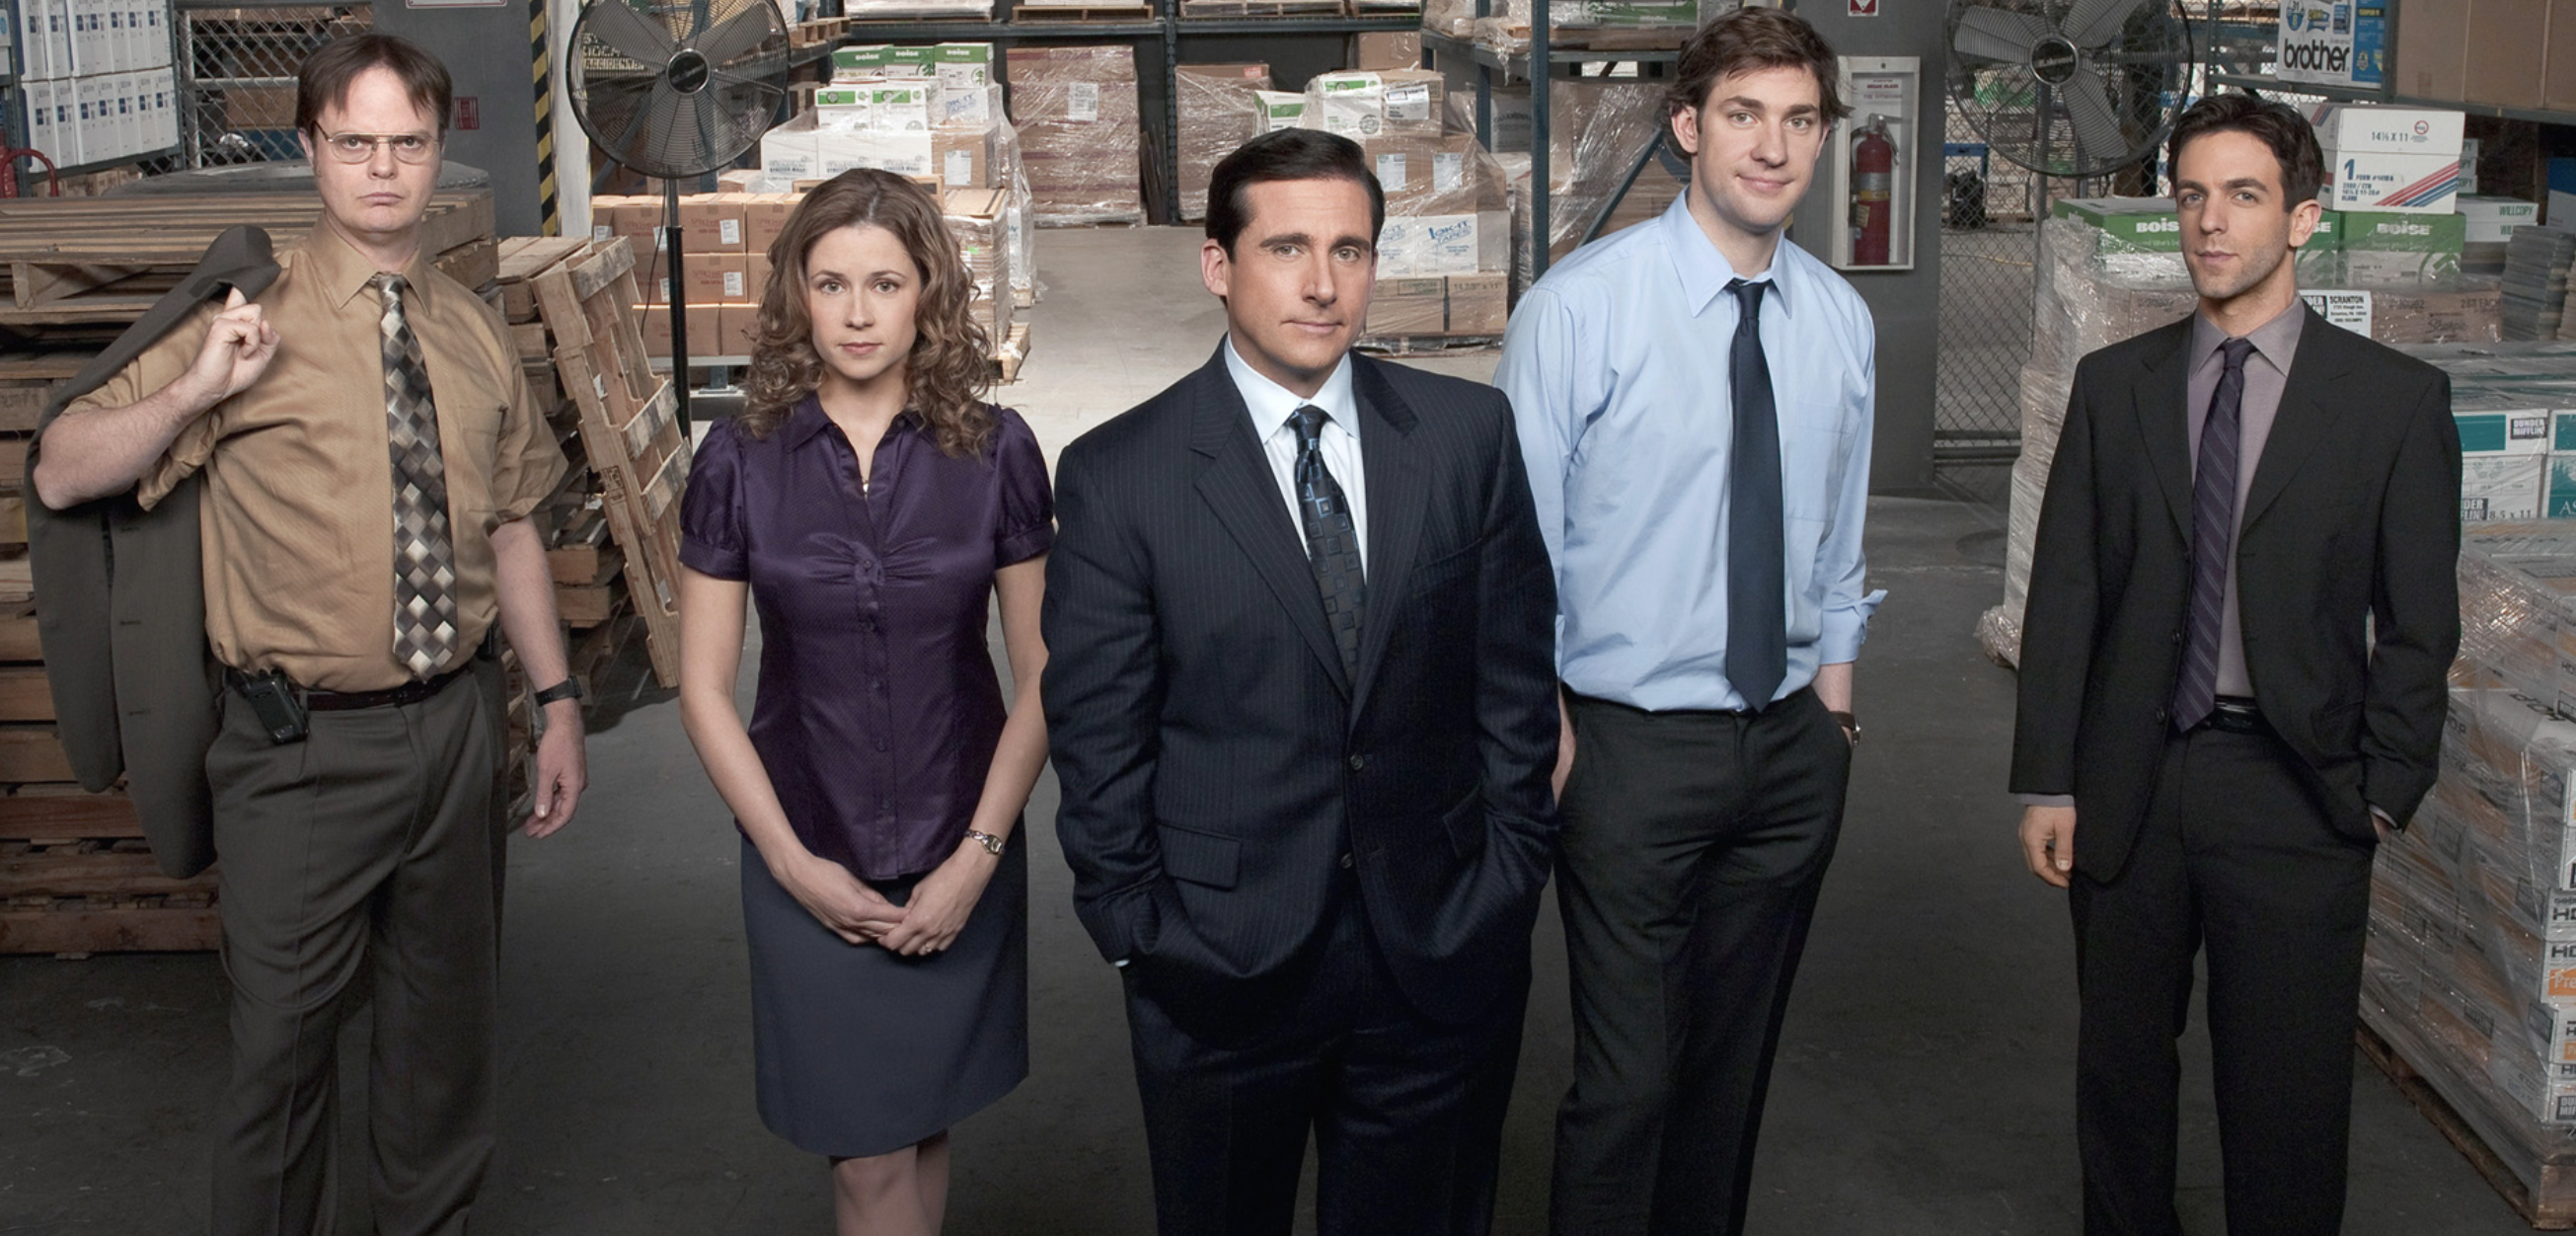 Les producteurs de The Office développent une sitcom inspirée par le confinement